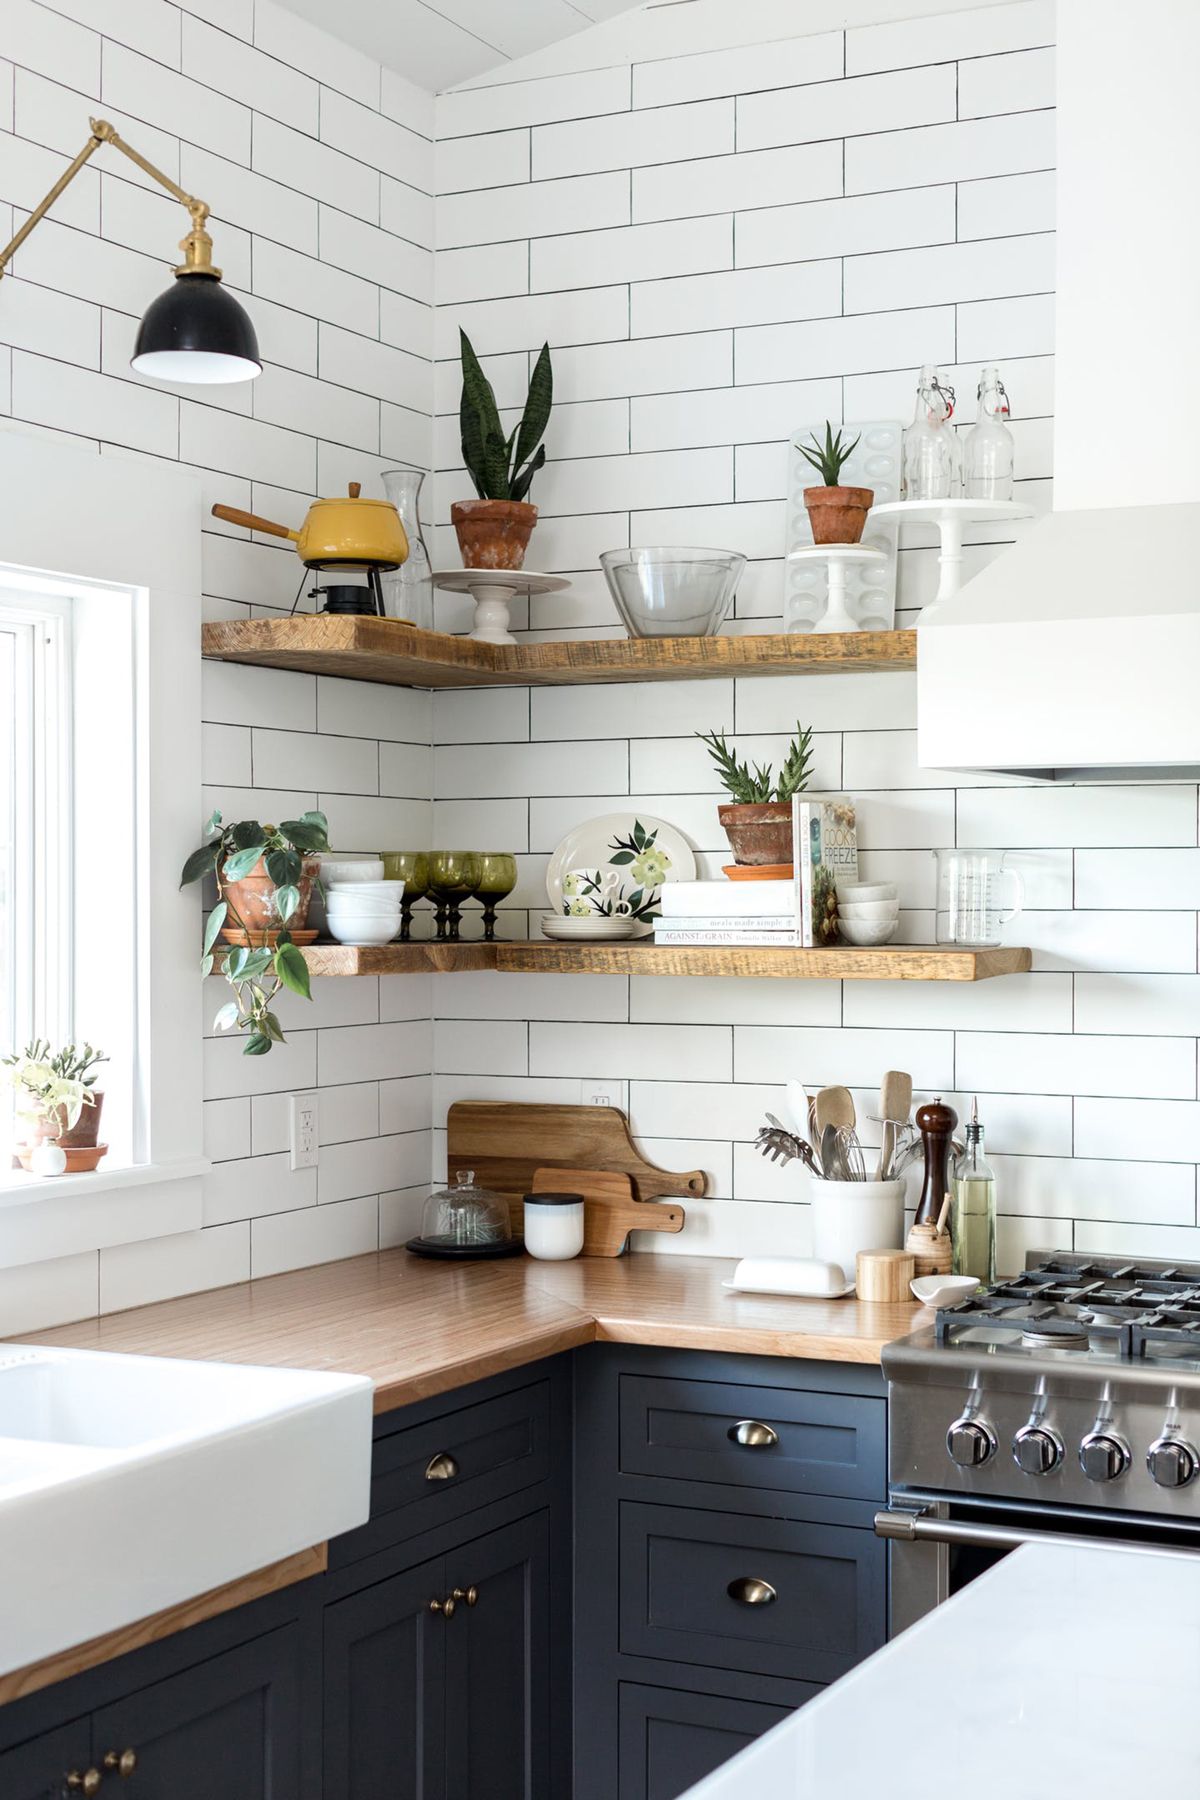 Thiết kế bếp nhỏ thông minh là giải pháp tối ưu cho căn nhà nhỏ. Qua khảo sát và tư vấn kỹ càng, chúng tôi sẽ tạo ra một không gian bếp nhỏ thông minh, mang lại tiện nghi và tiết kiệm không gian một cách tuyệt vời.